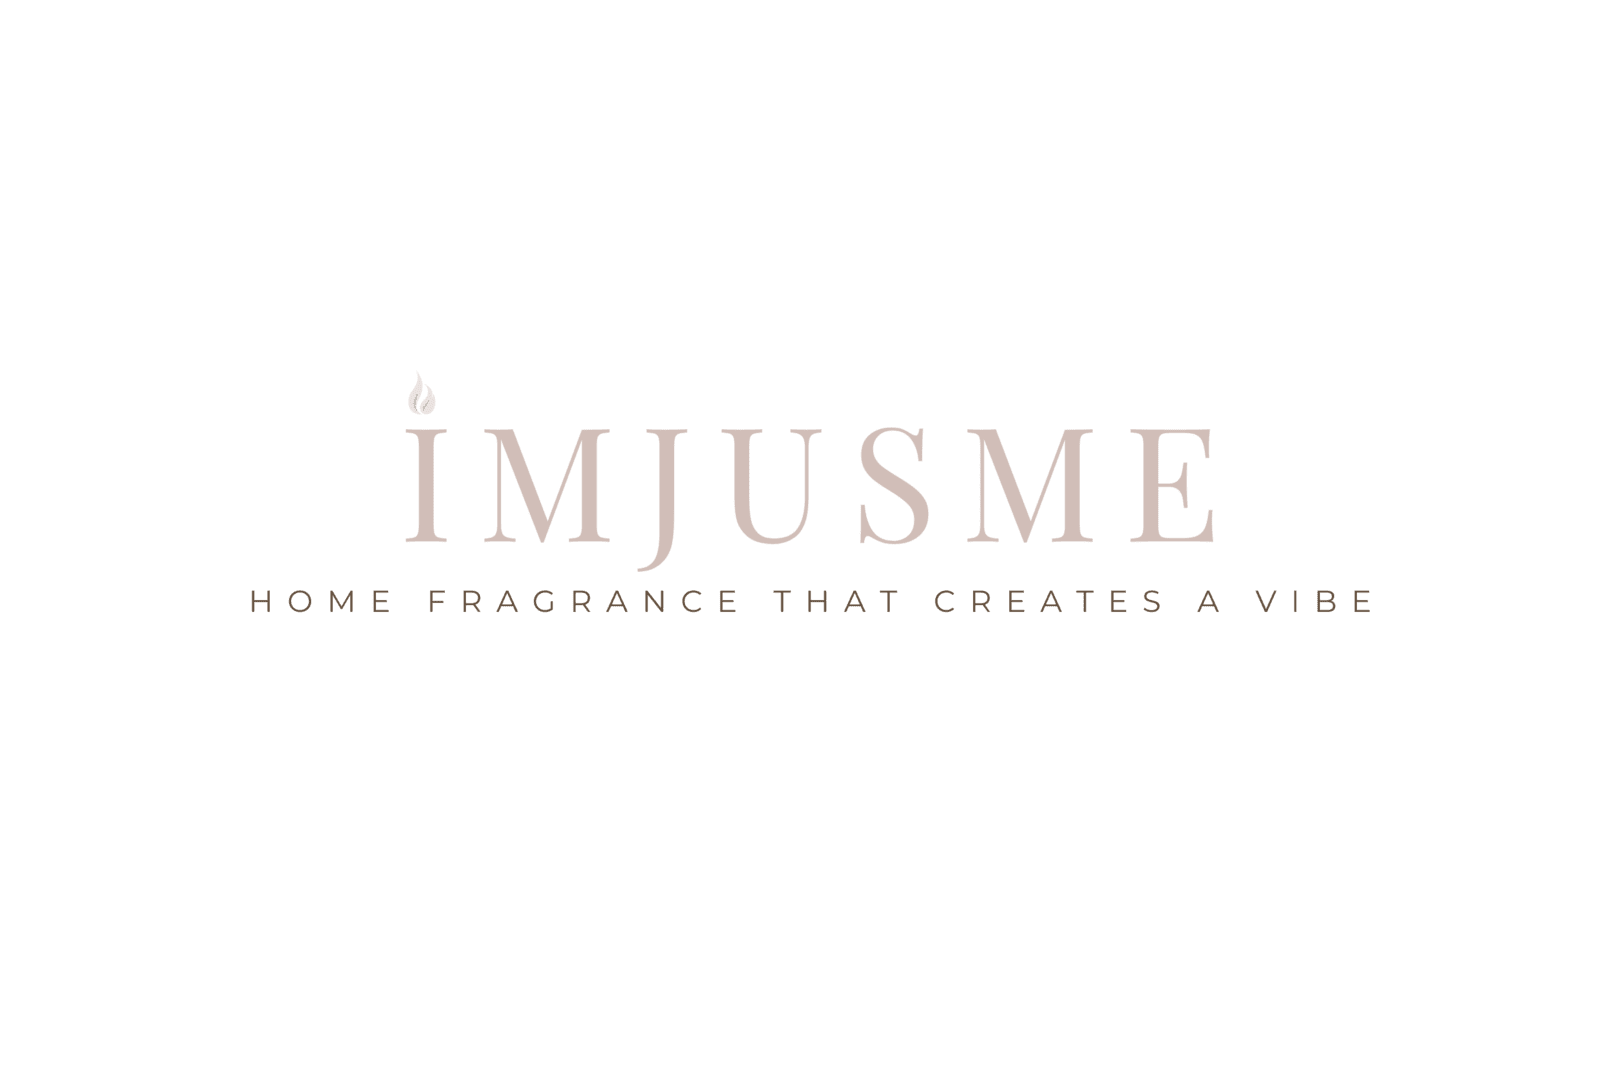 Logo of Imjusme Home Fragance